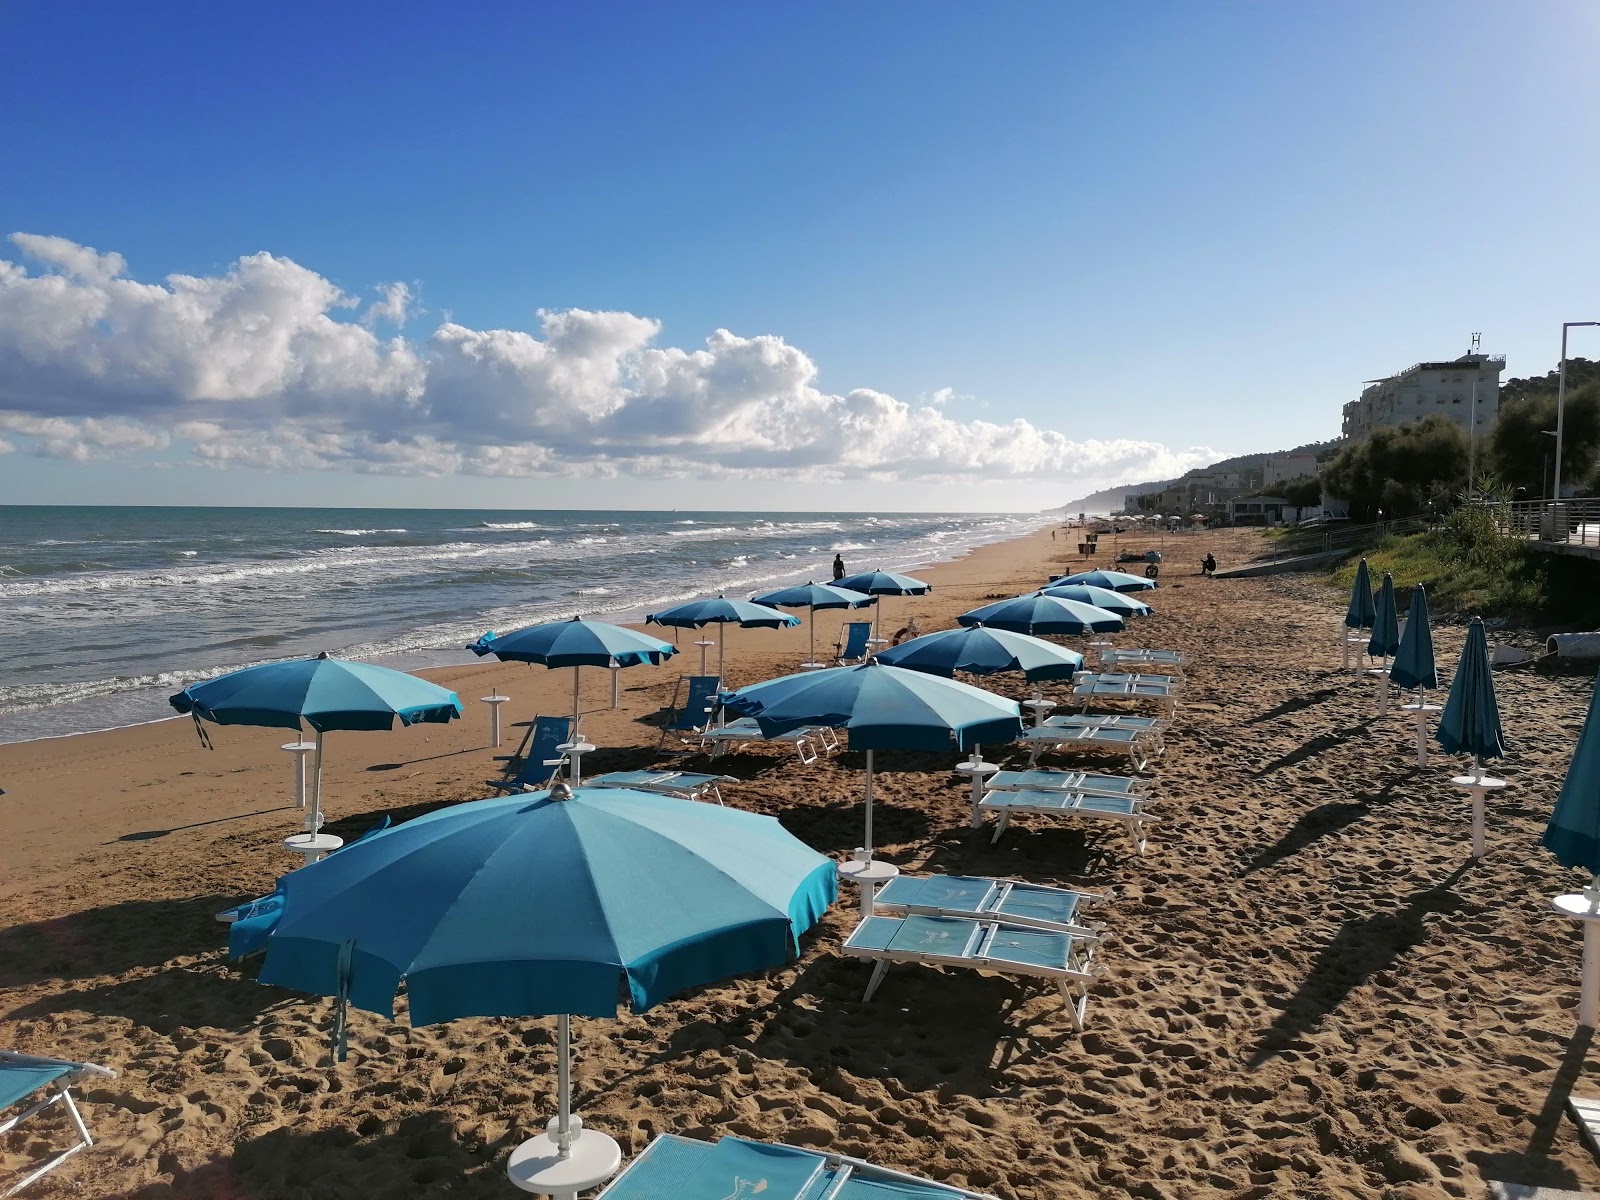 Spiaggia di San Menaio的照片 带有碧绿色纯水表面